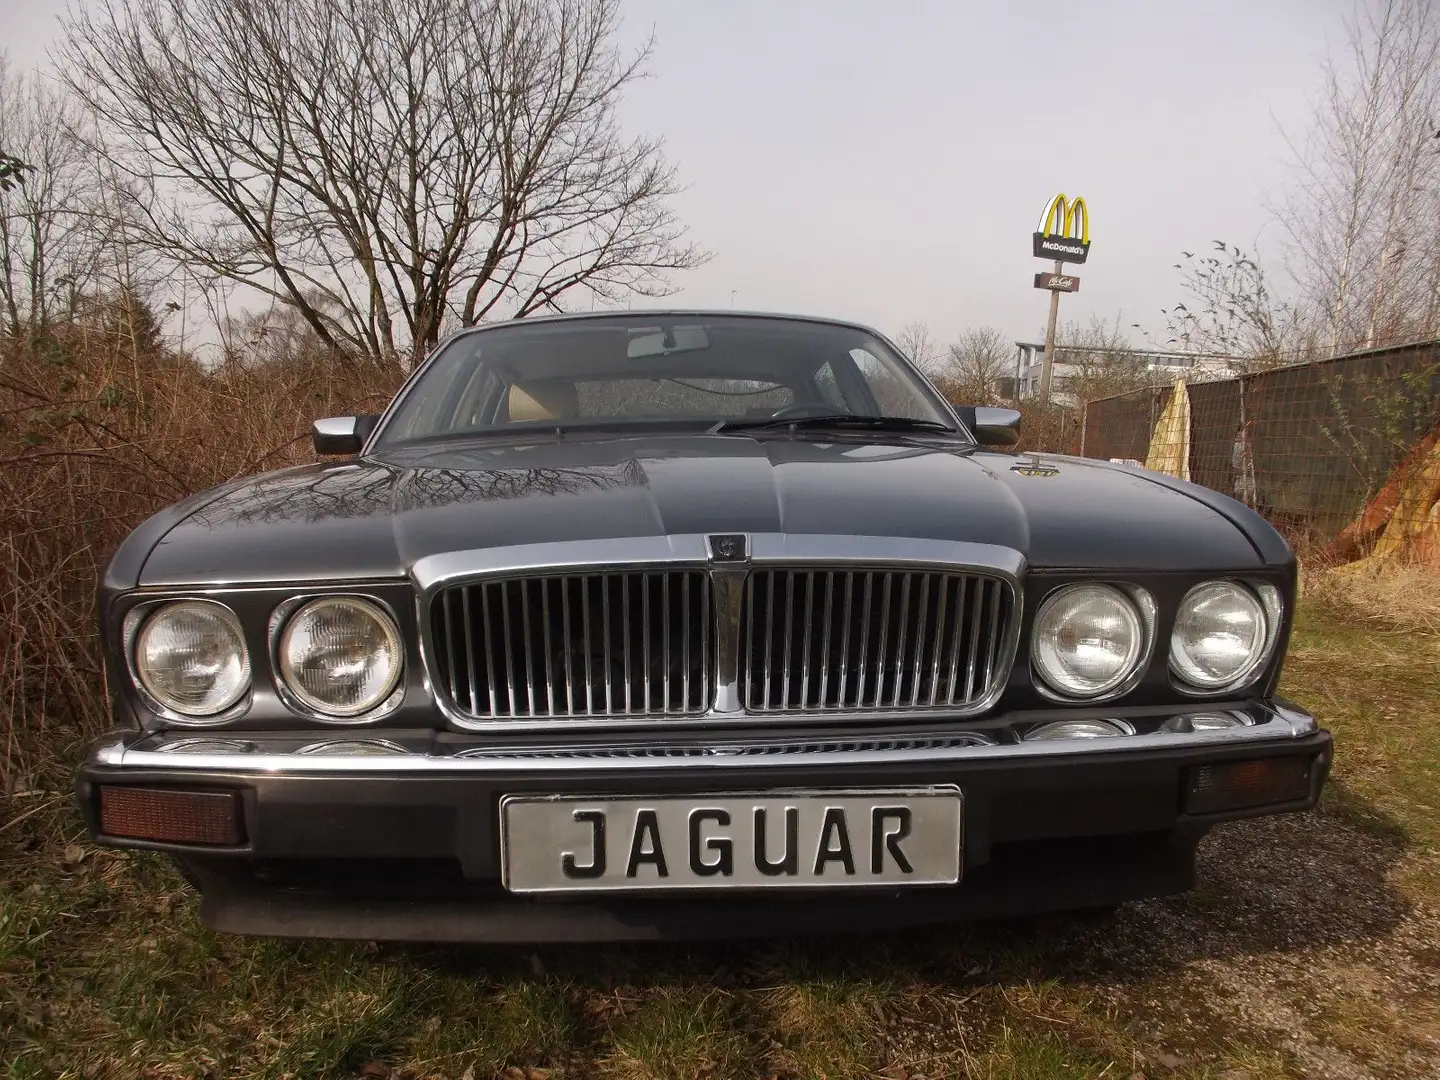 Jaguar XJ40 ein echter Oldtimer (!) vom Allerfeinsten! Braun - 2